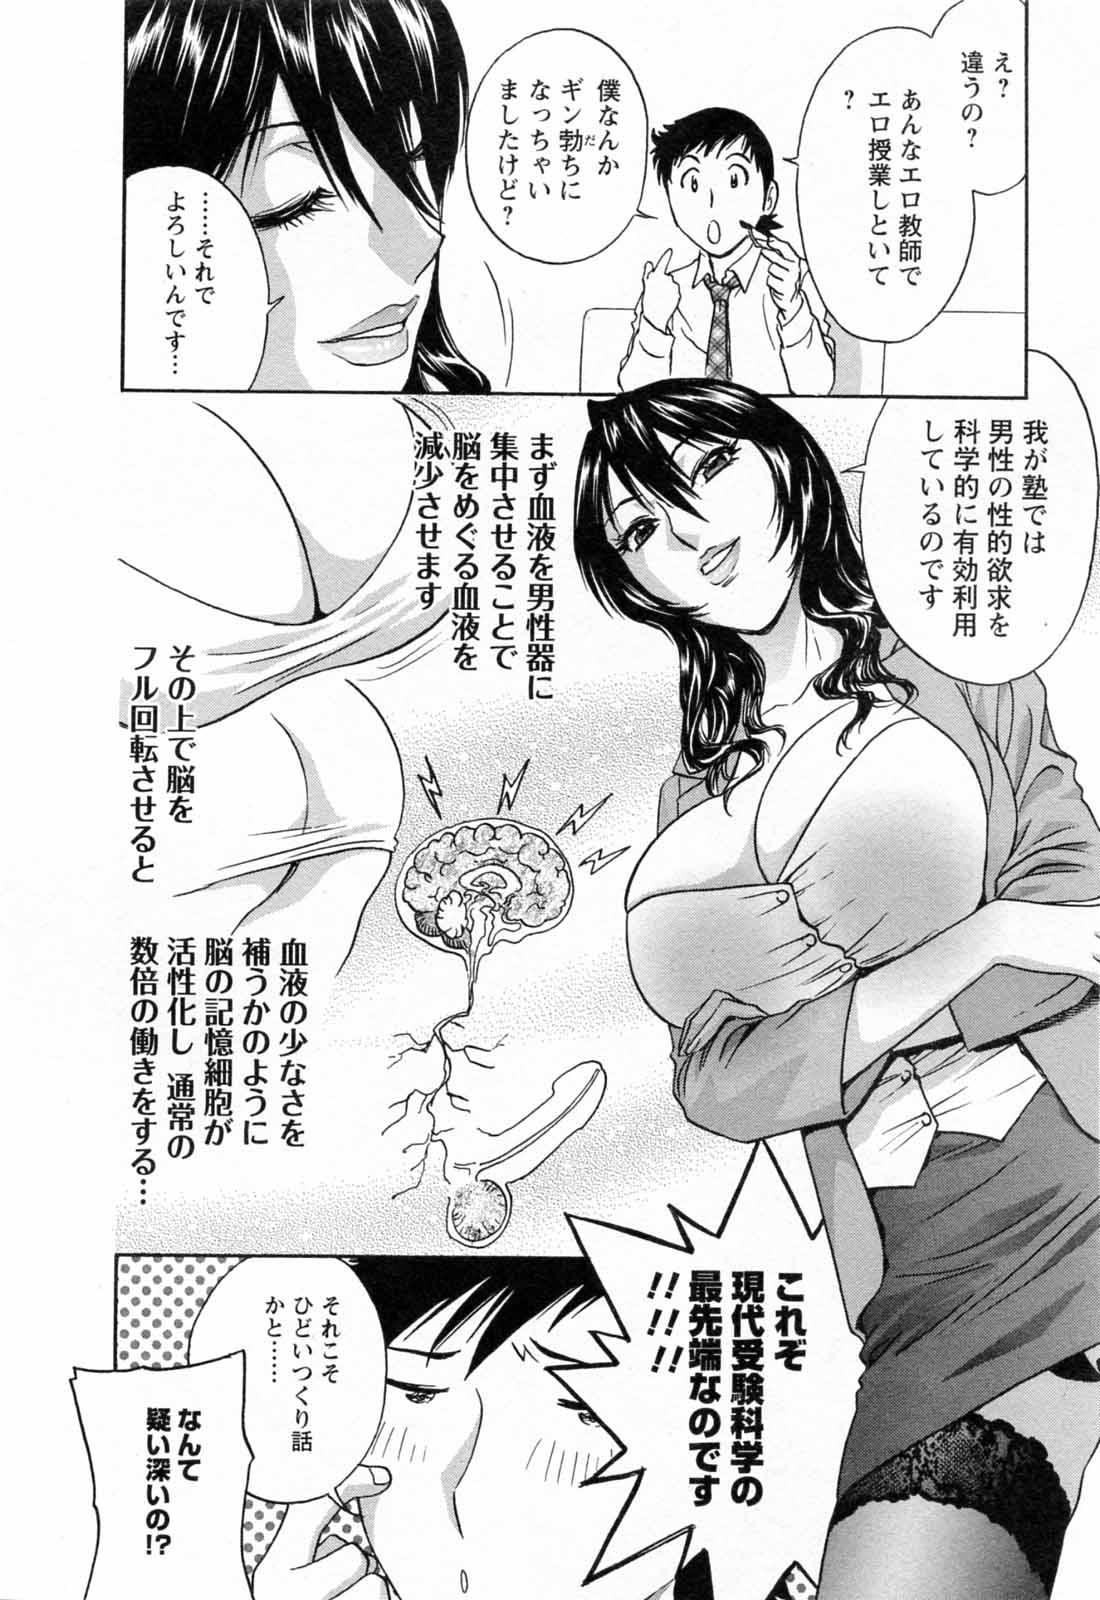 [Hidemaru] Mo-Retsu! Boin Sensei (Boing Boing Teacher) Vol.5 19